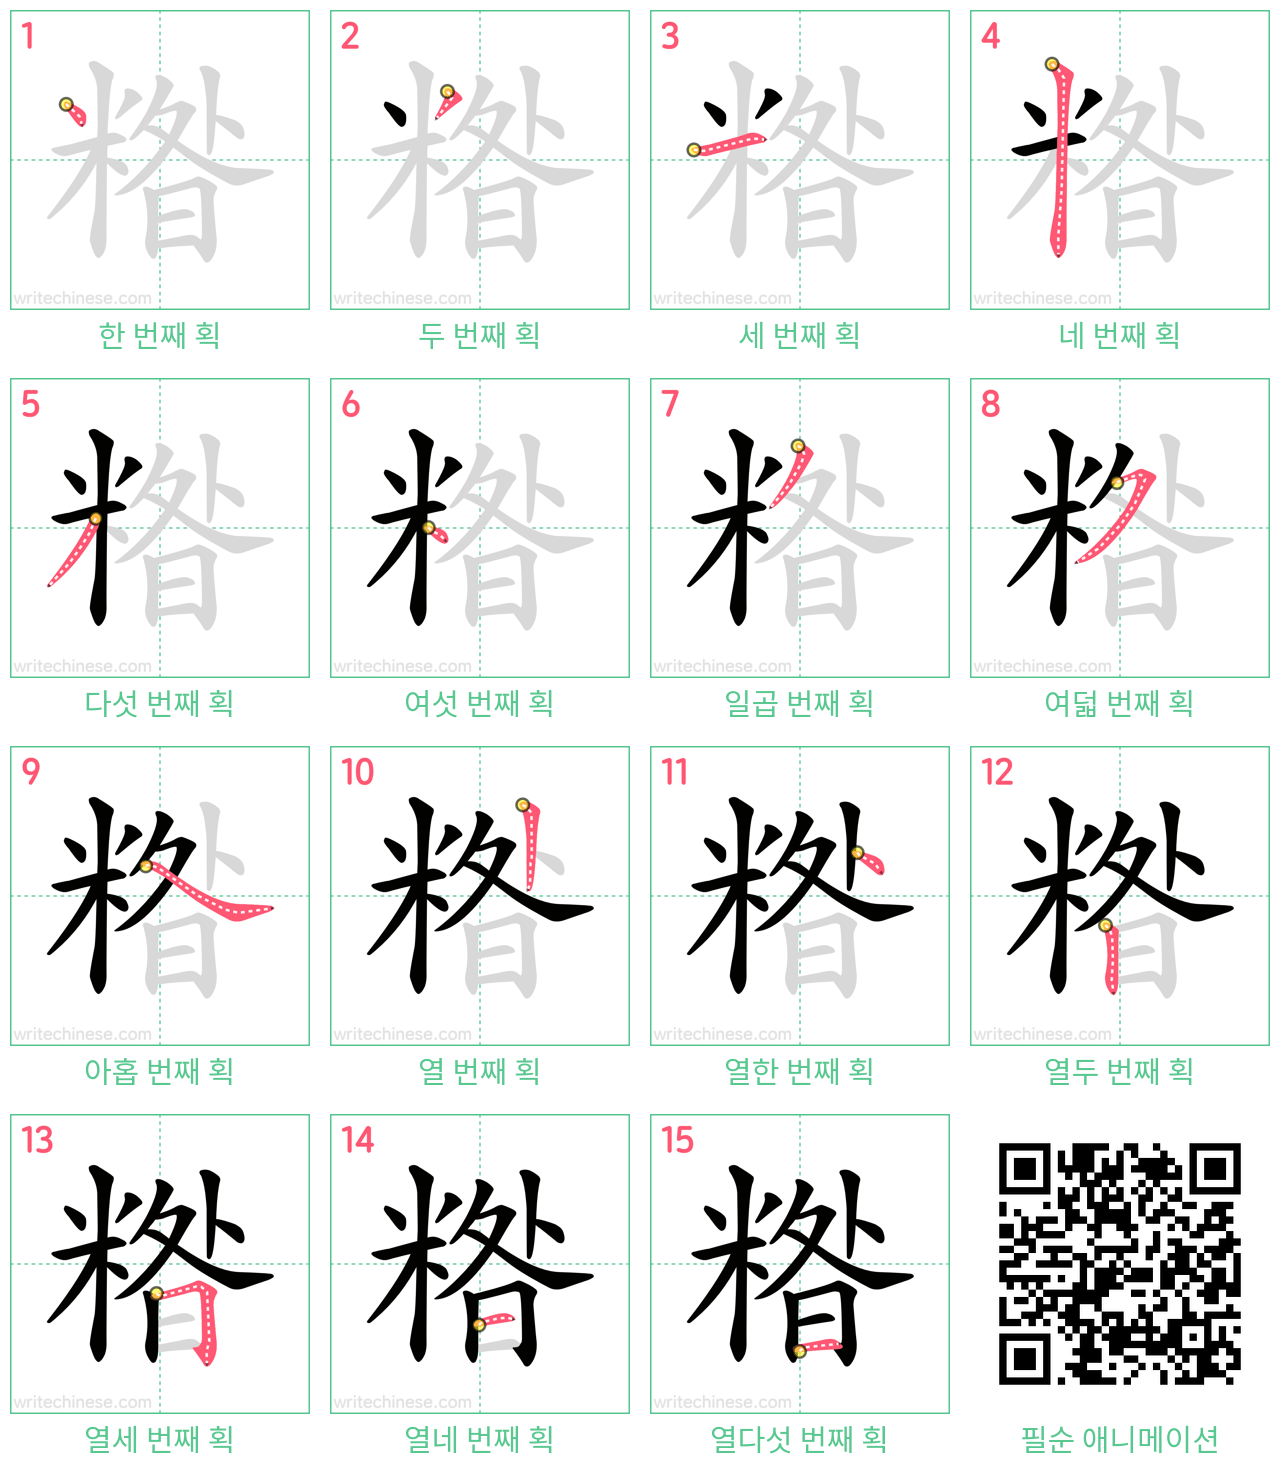 糌 step-by-step stroke order diagrams